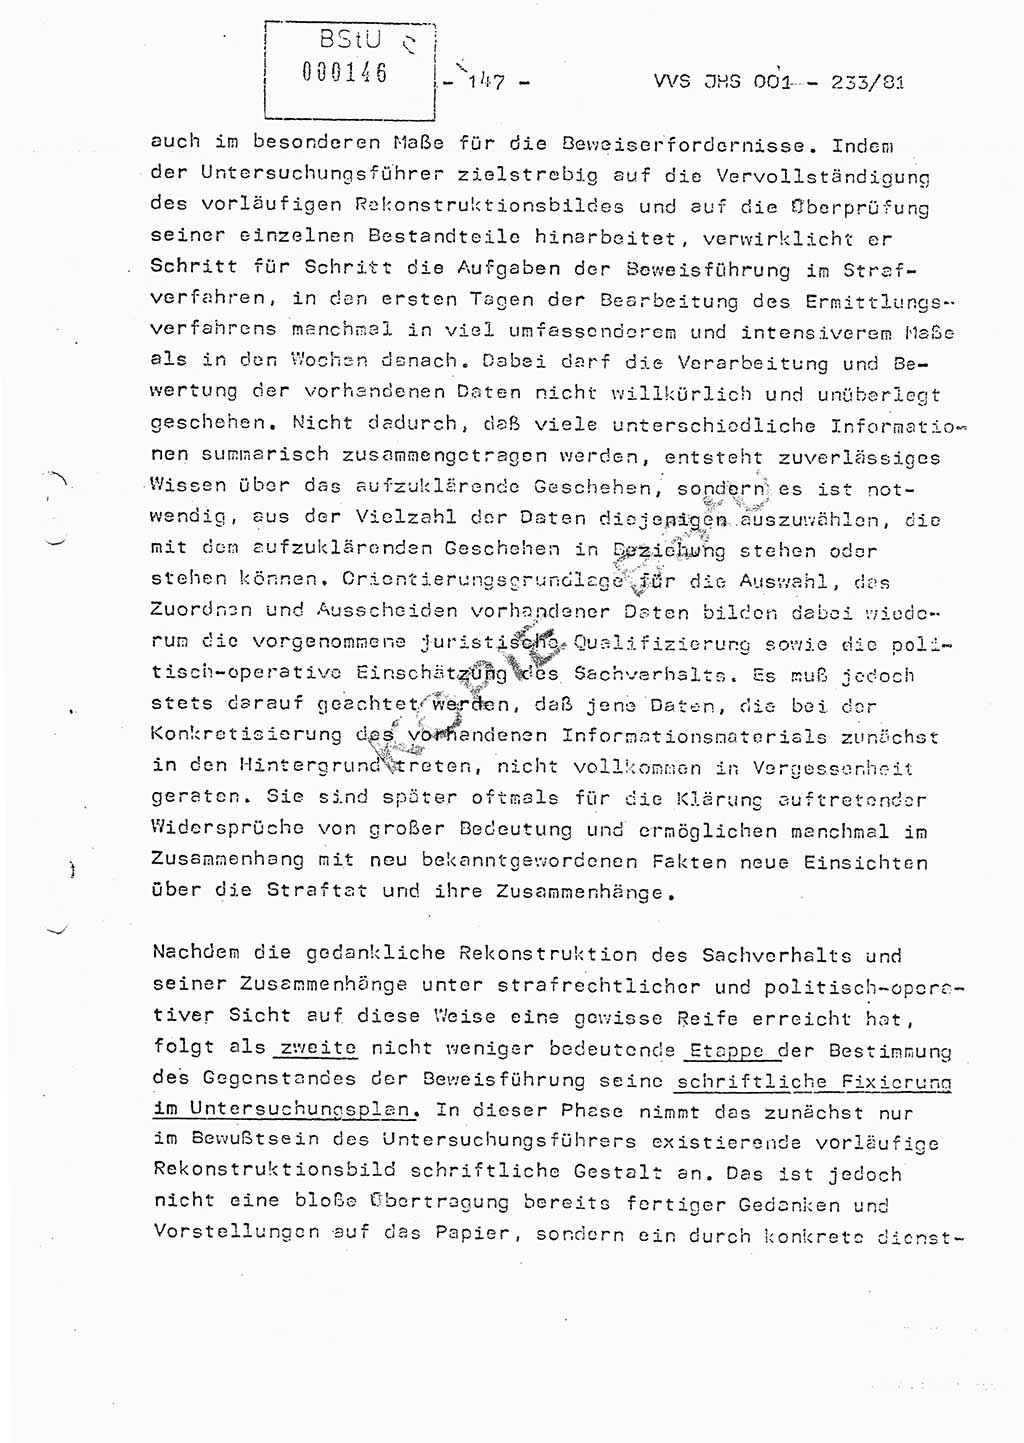 Dissertation Oberstleutnant Horst Zank (JHS), Oberstleutnant Dr. Karl-Heinz Knoblauch (JHS), Oberstleutnant Gustav-Adolf Kowalewski (HA Ⅸ), Oberstleutnant Wolfgang Plötner (HA Ⅸ), Ministerium für Staatssicherheit (MfS) [Deutsche Demokratische Republik (DDR)], Juristische Hochschule (JHS), Vertrauliche Verschlußsache (VVS) o001-233/81, Potsdam 1981, Blatt 147 (Diss. MfS DDR JHS VVS o001-233/81 1981, Bl. 147)